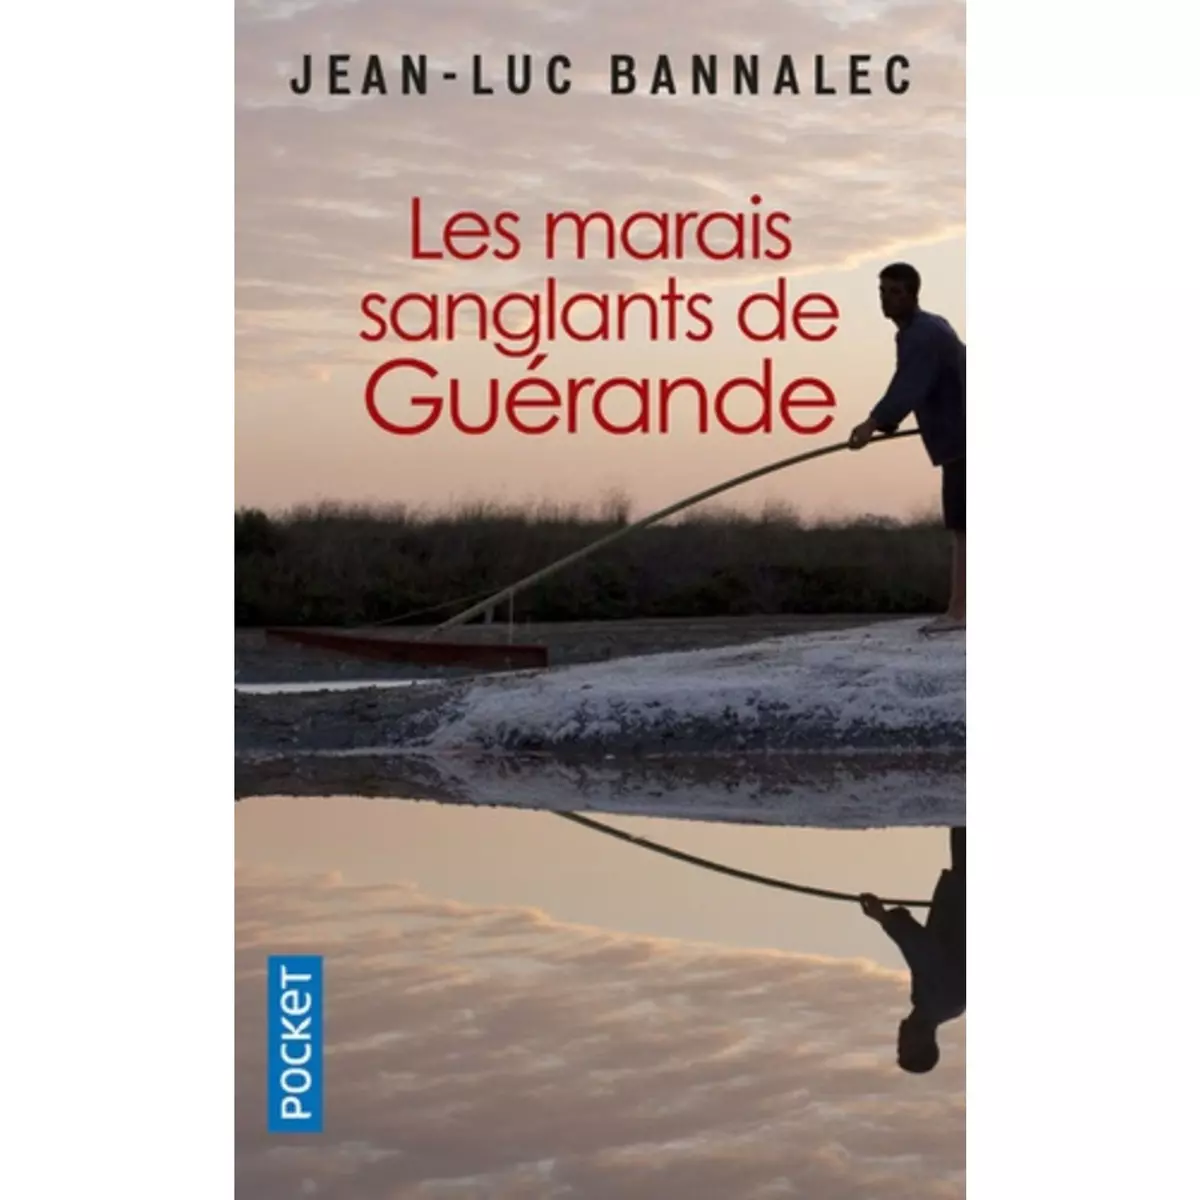  UNE ENQUETE DU COMMISSAIRE DUPIN : LES MARAIS SANGLANTS DE GUERANDE, Bannalec Jean-Luc